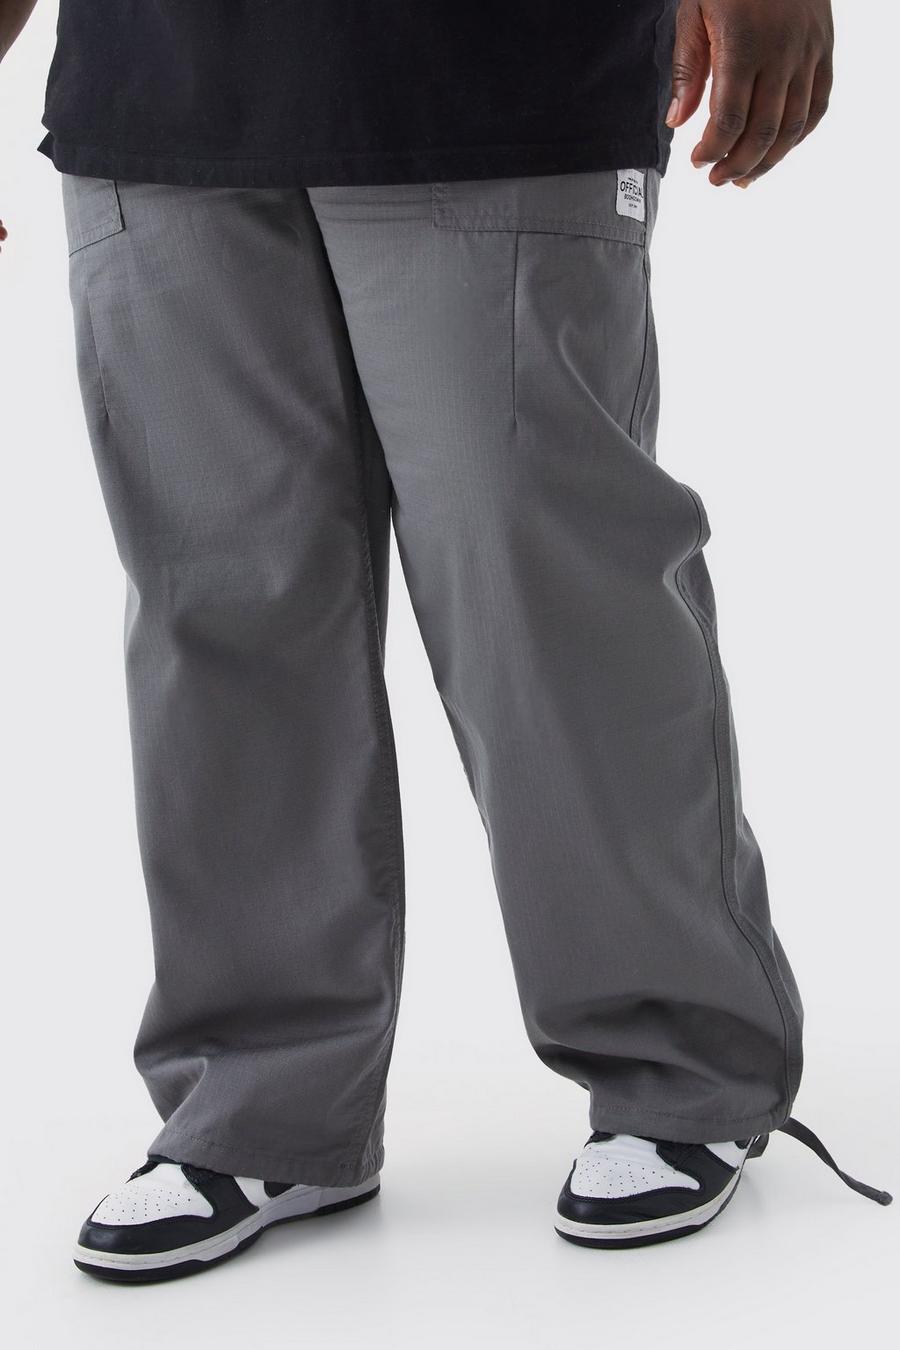 Pantaloni lunghi Plus Size rilassati in nylon ripstop elasticizzato con etichetta, Charcoal image number 1